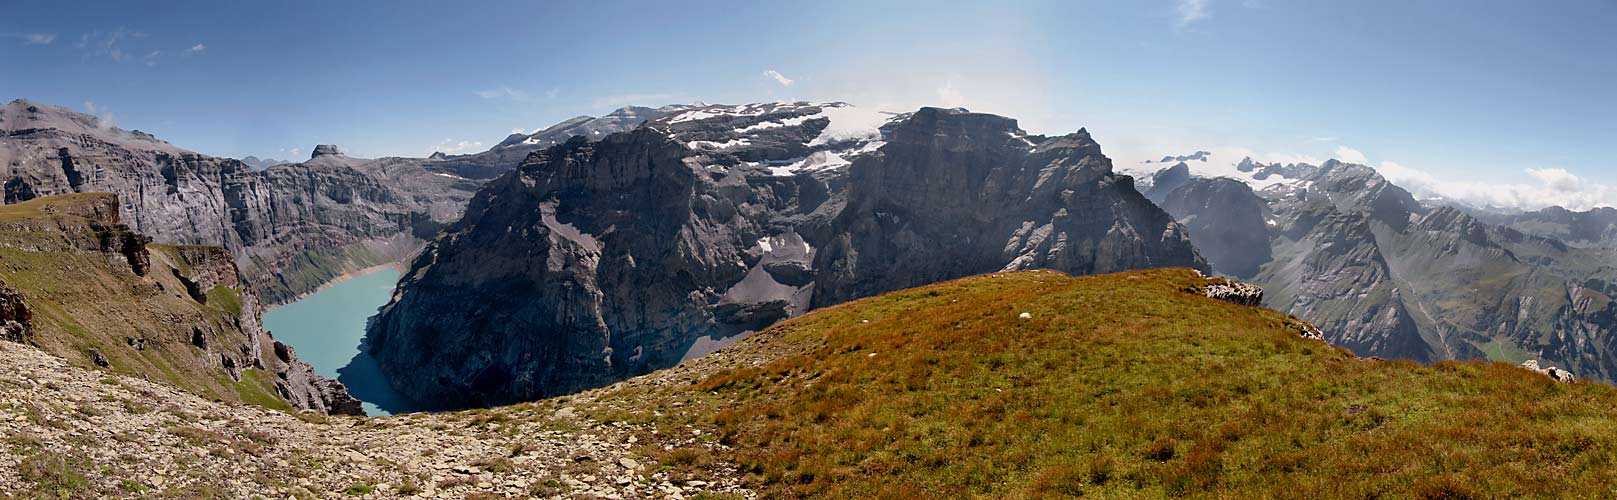 Panorama im Aufstieg zur Muttseehütte